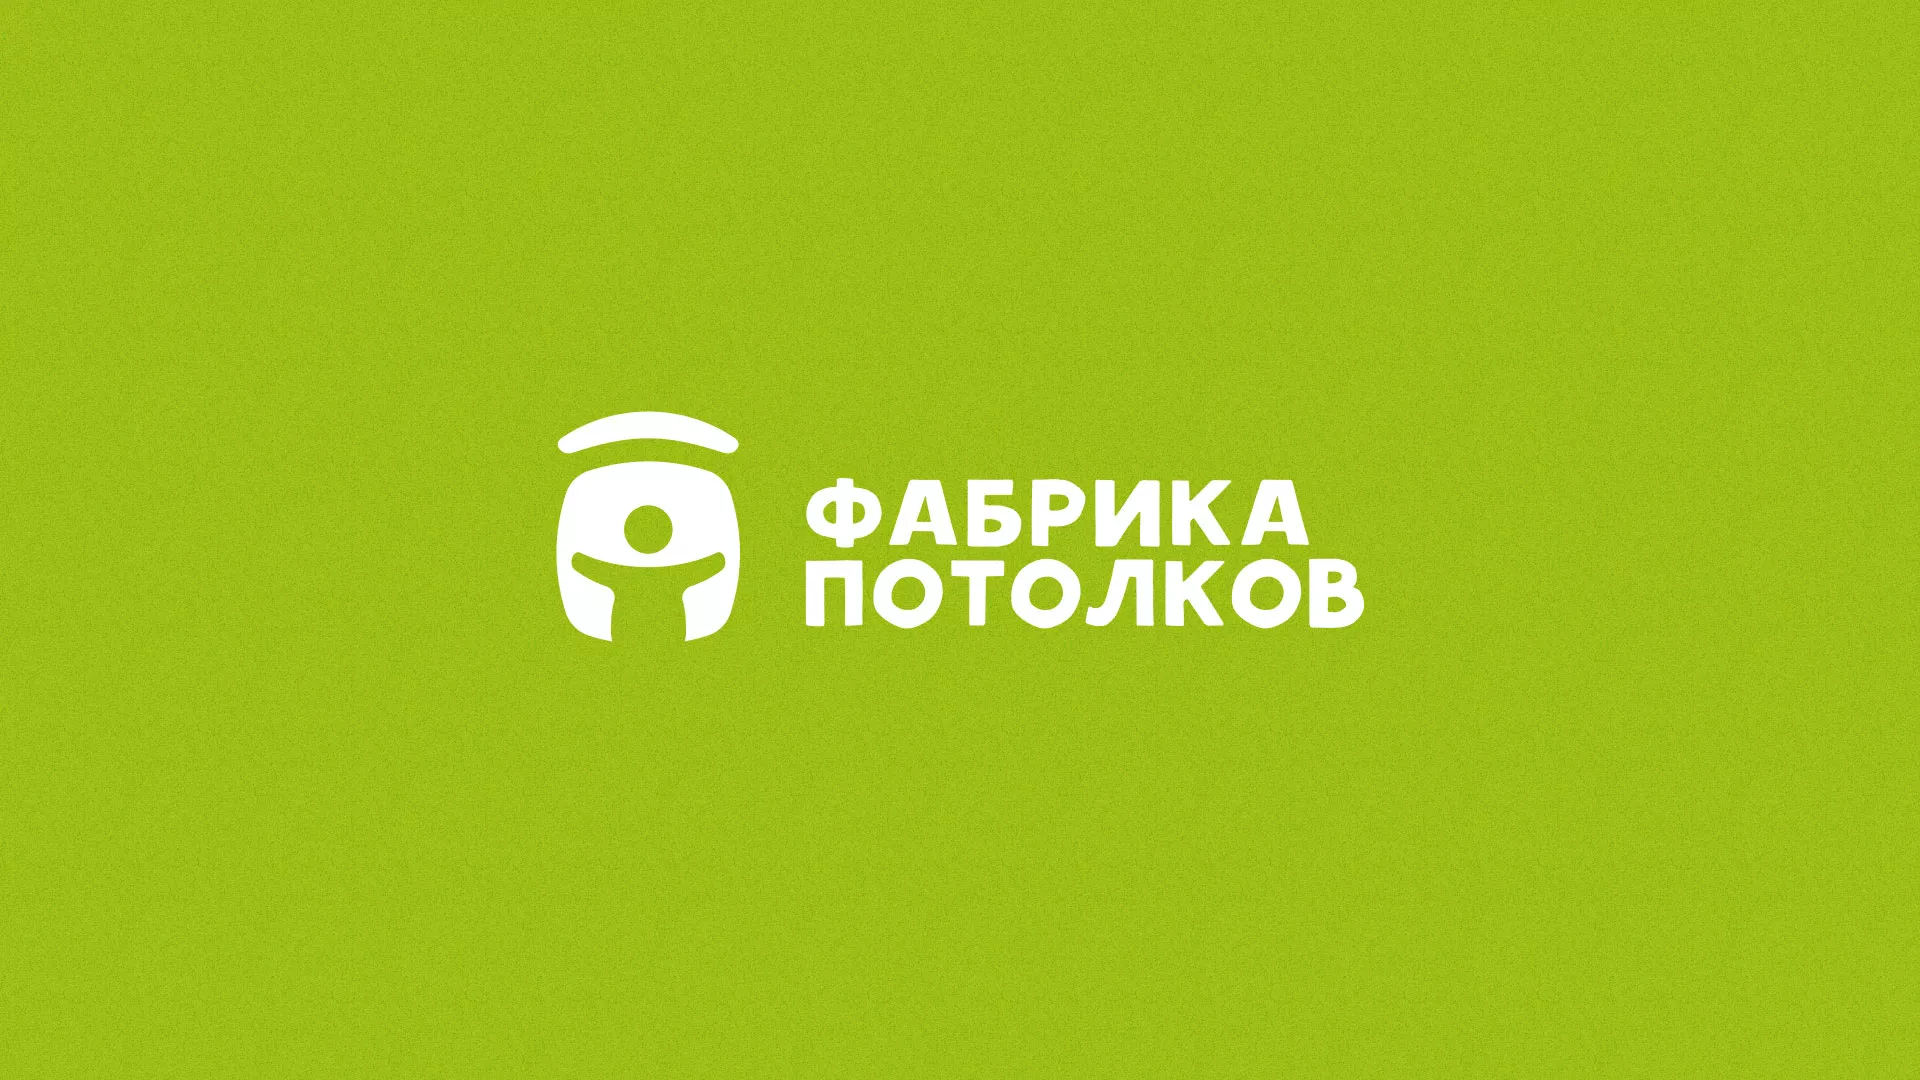 Разработка логотипа для производства натяжных потолков в Бабаево